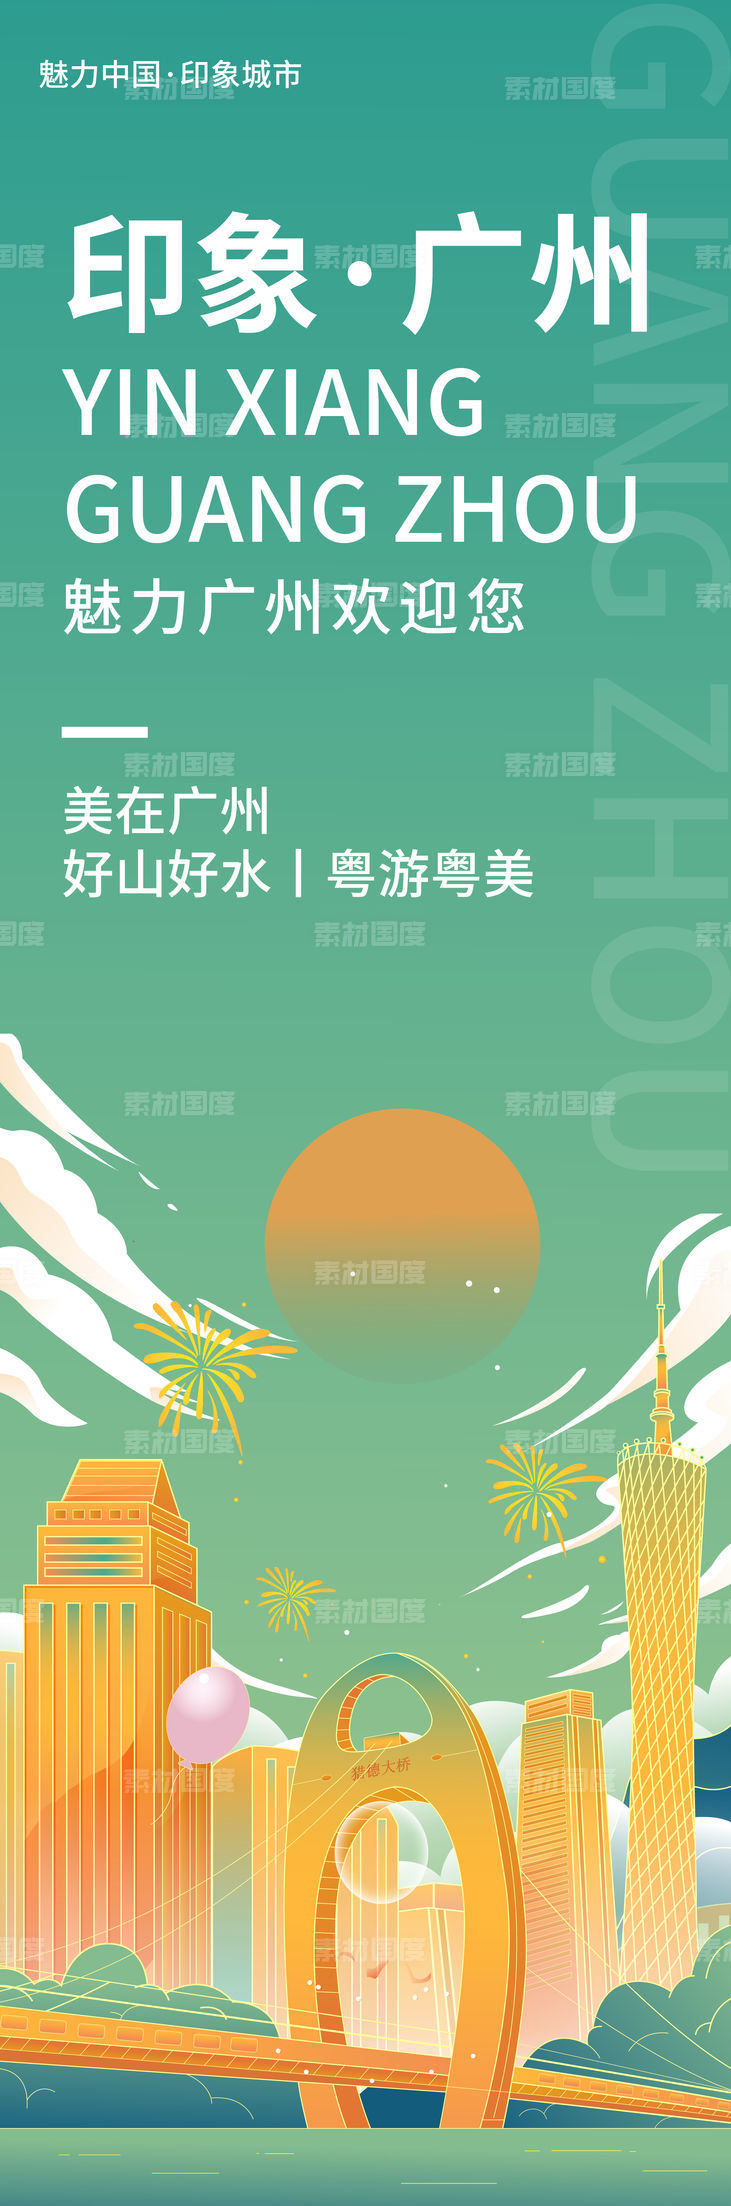 印象广州旅游海报